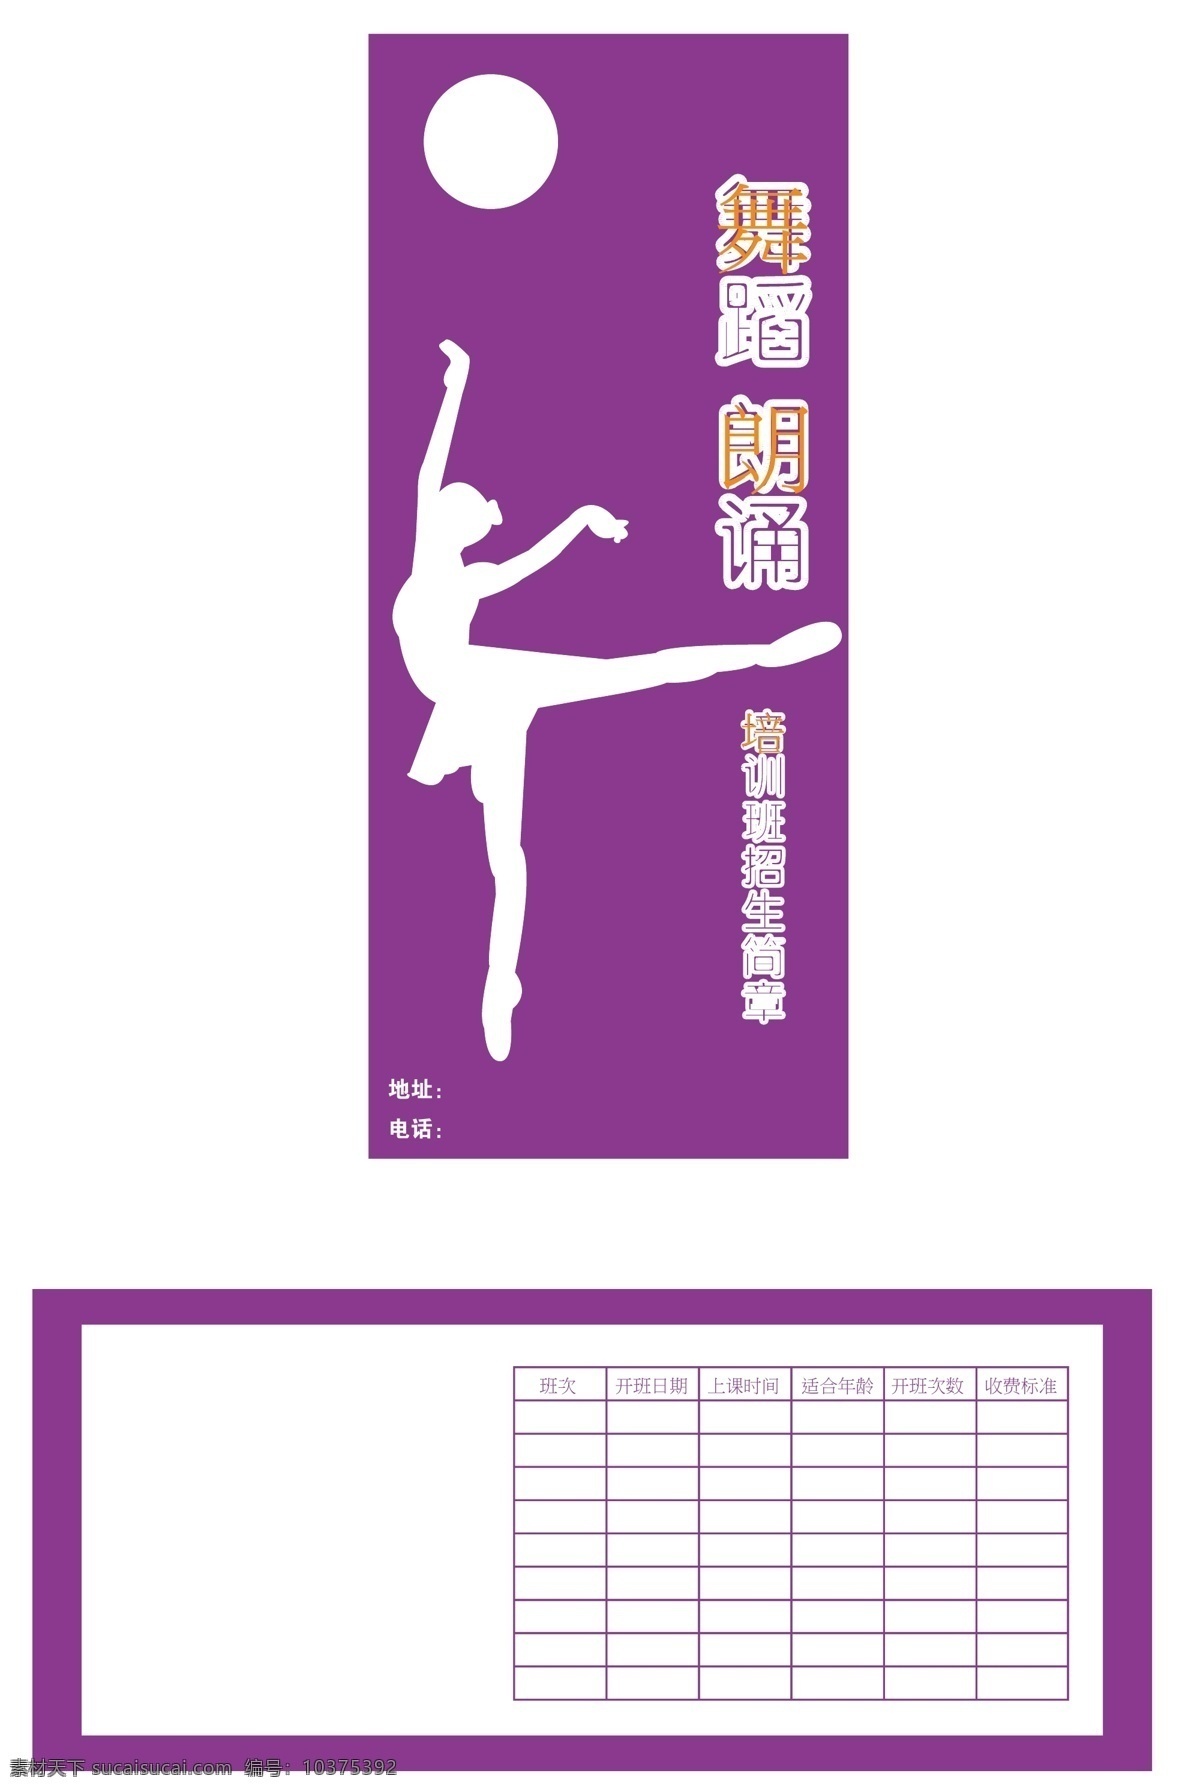 dm宣传单 芭蕾舞 白色 长方形 华丽 橘黄色 美丽 舞蹈 培训班 宣传单 紫色 圆形 圆体 姿势 妖娆 矢量 海报 企业文化海报